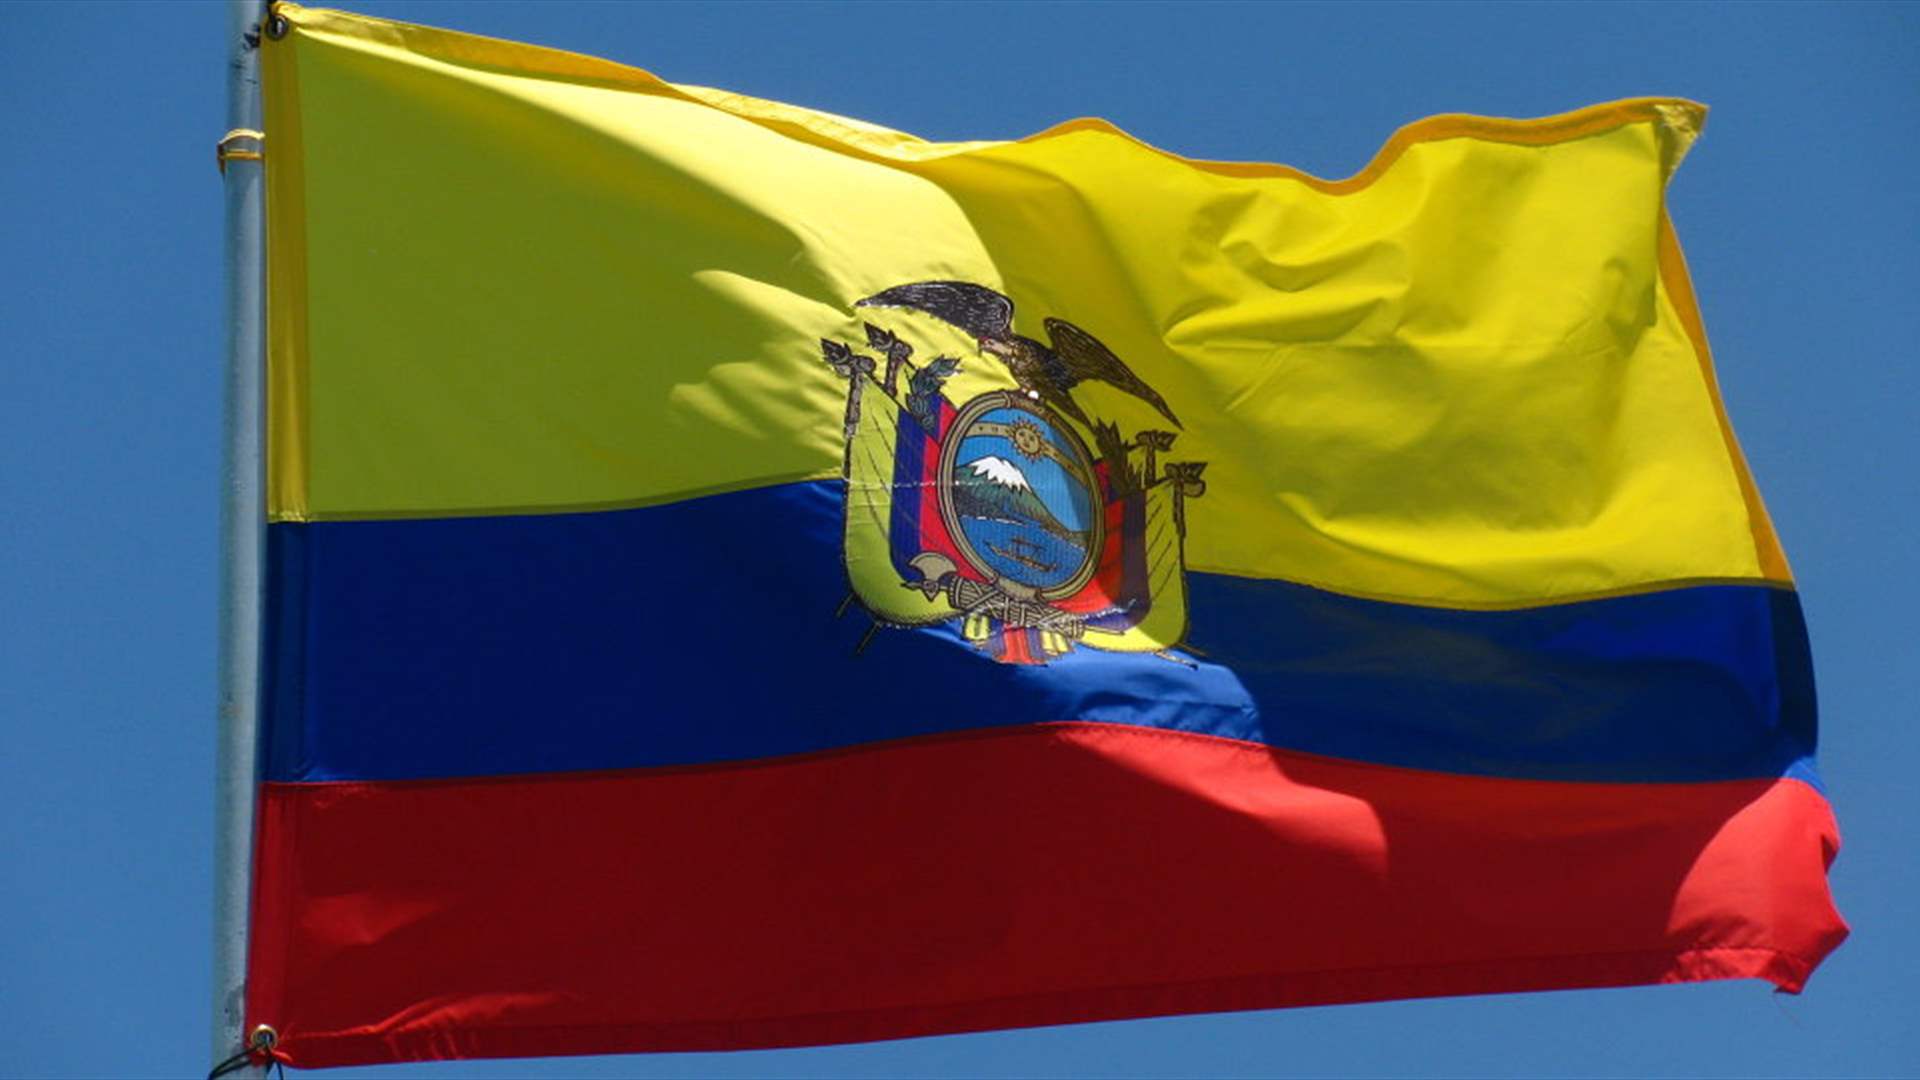 محكمة في الإكوادور تصدر أحكامًا بالسجن على 5 أشخاص على خلفية مقتل مرشح